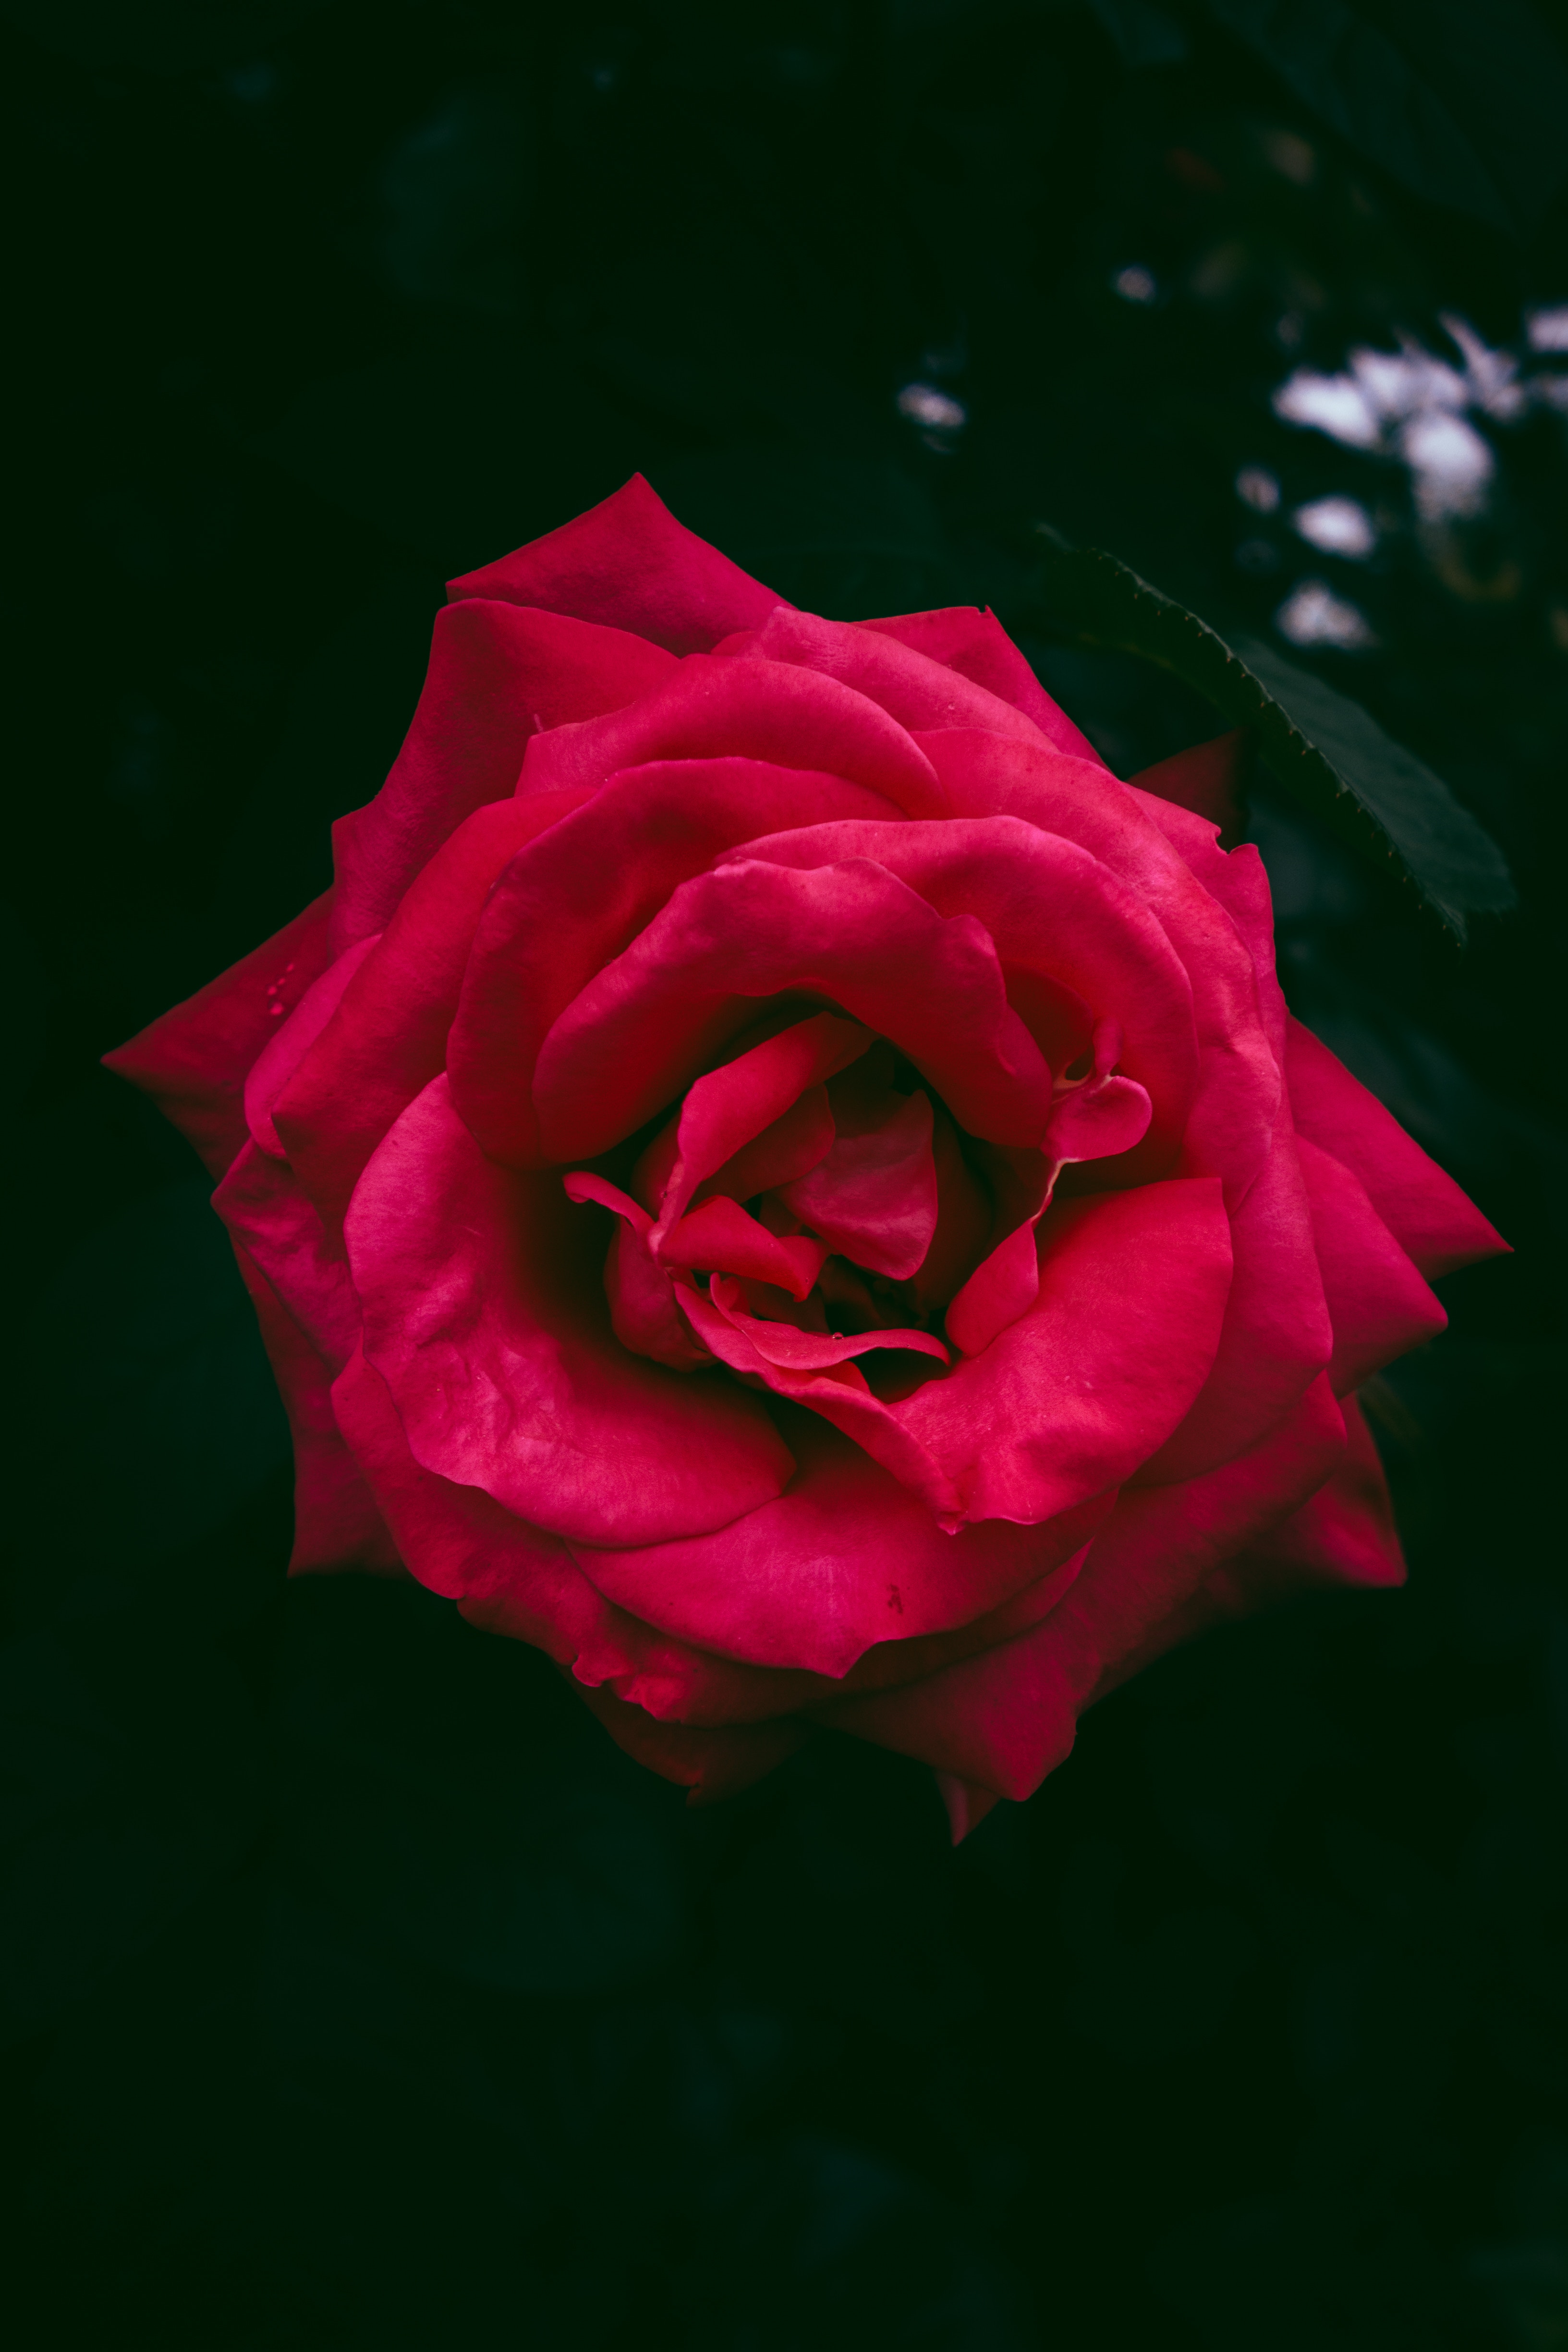 rose flower, flowers, bush, red, rose, bud